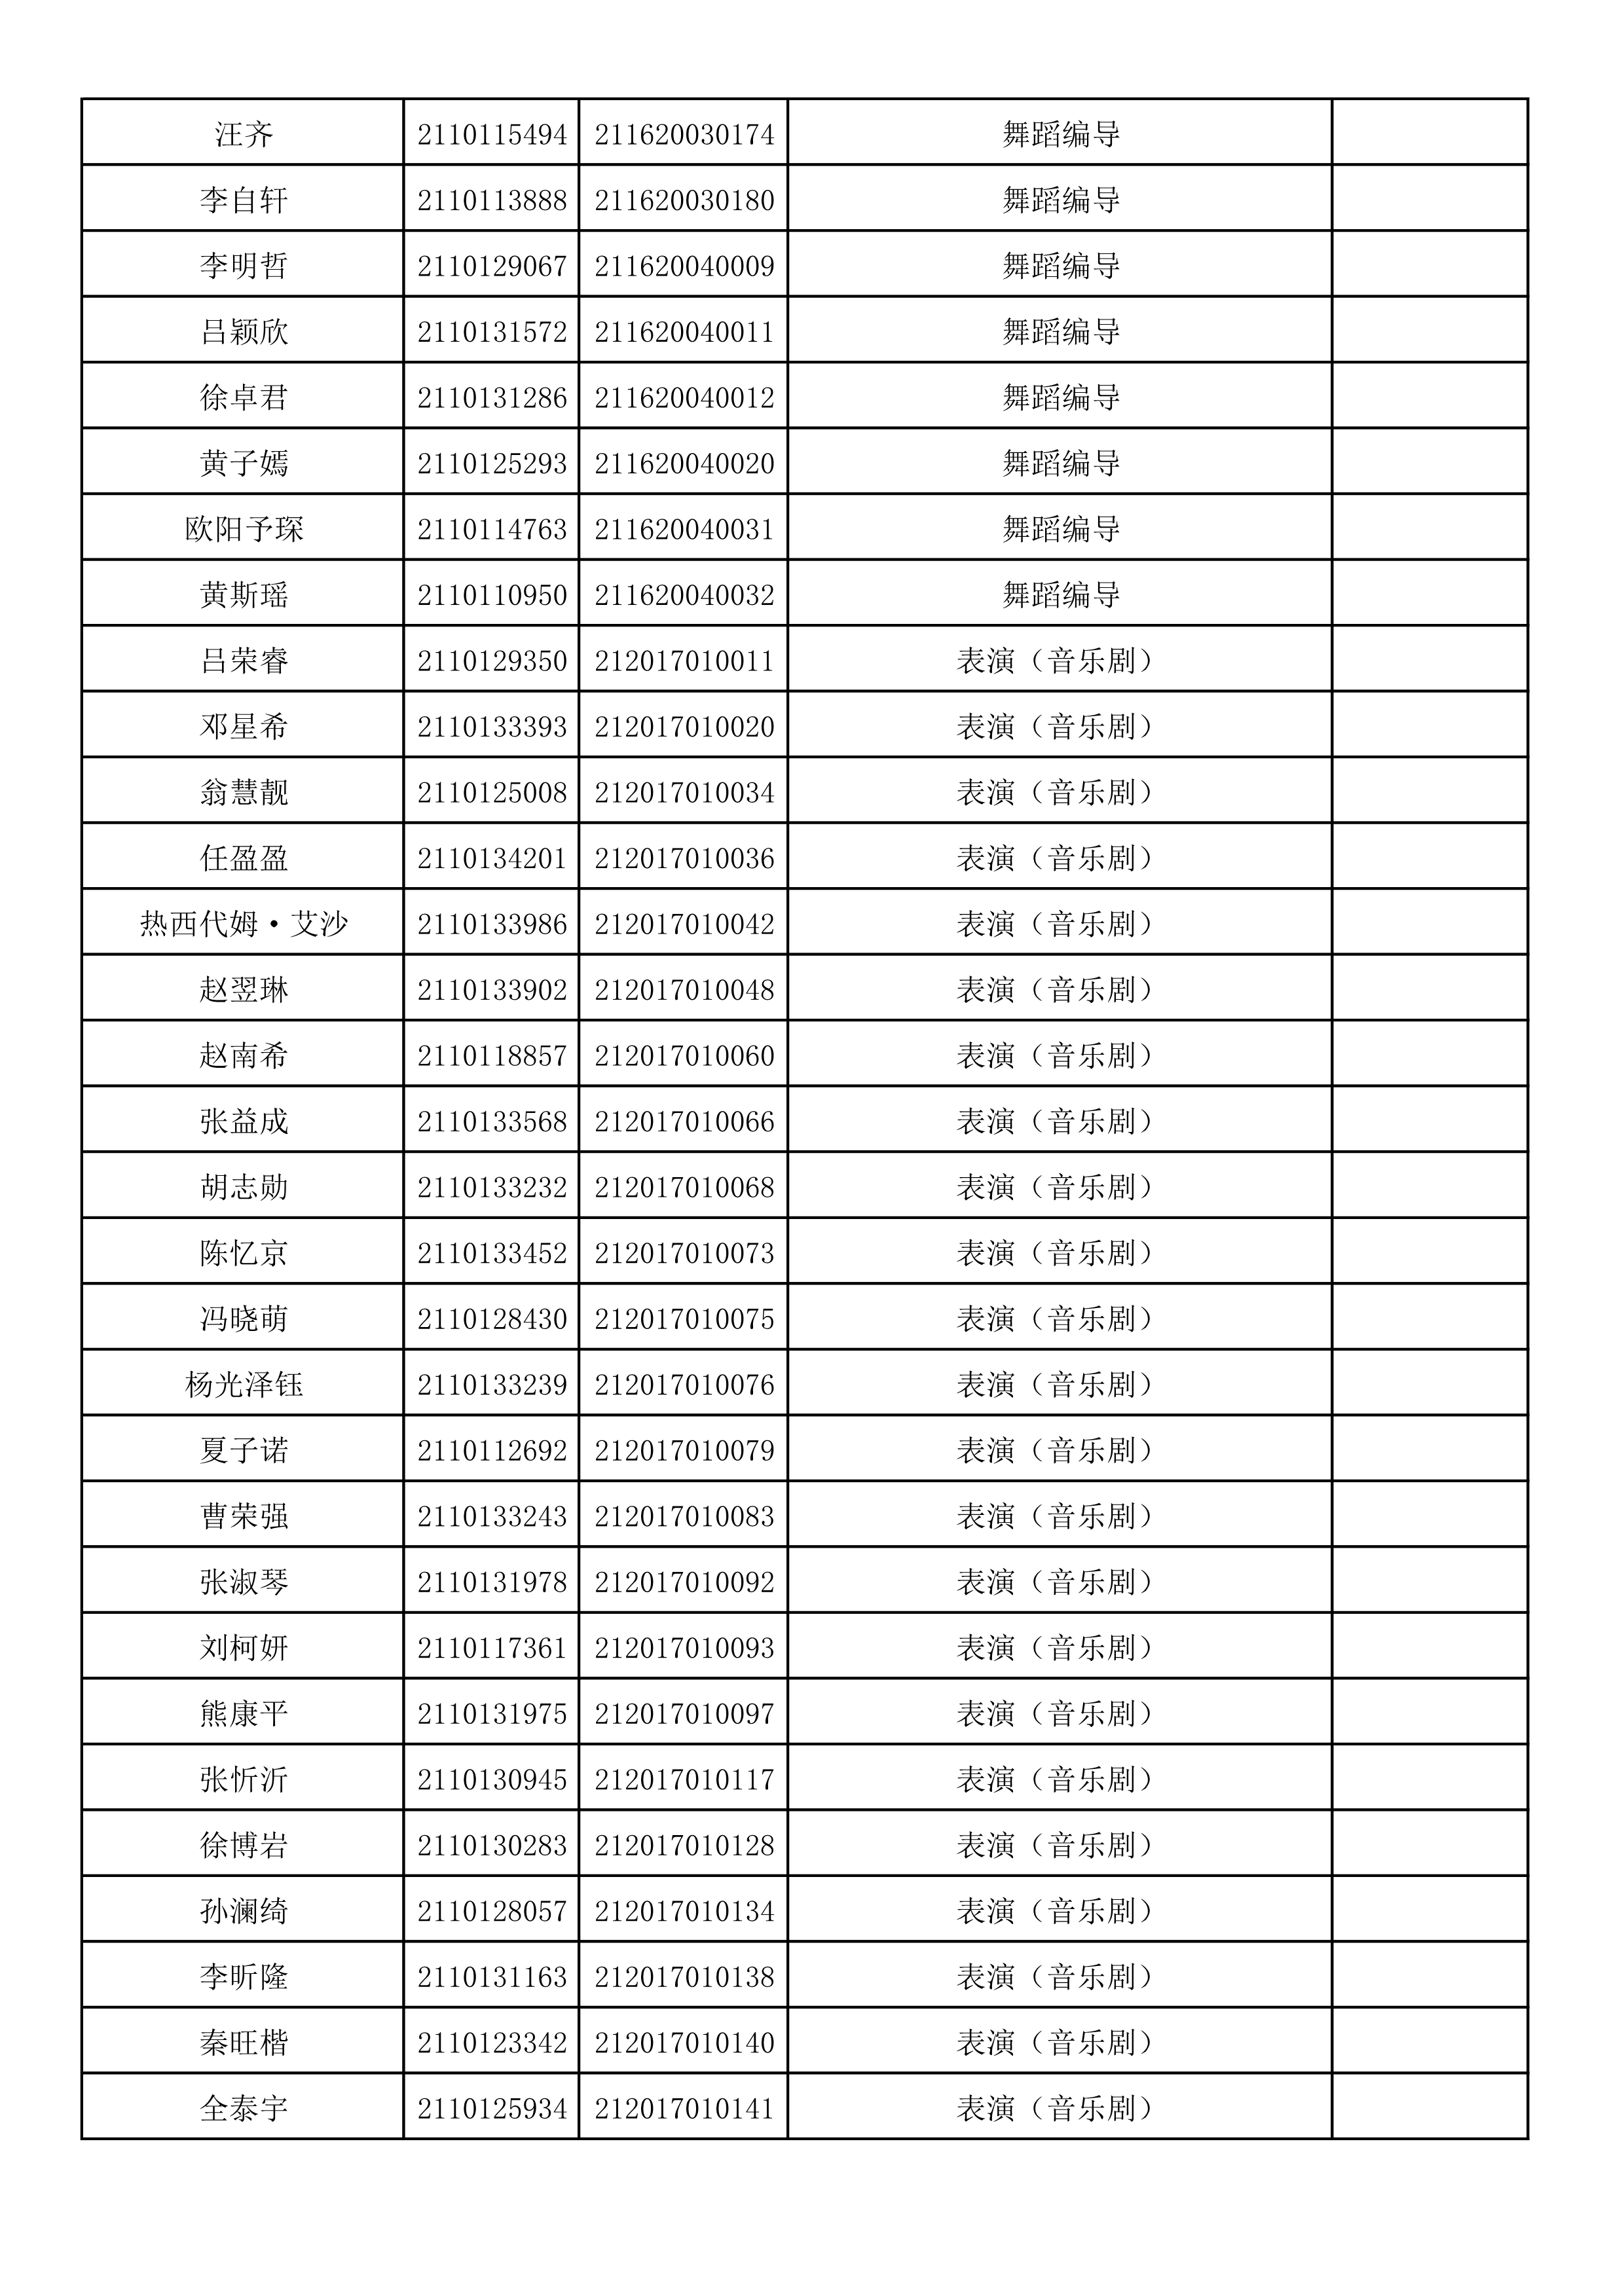 附件2：浙江音乐学院2021年本科招生专业校考初试合格考生名单_86.png